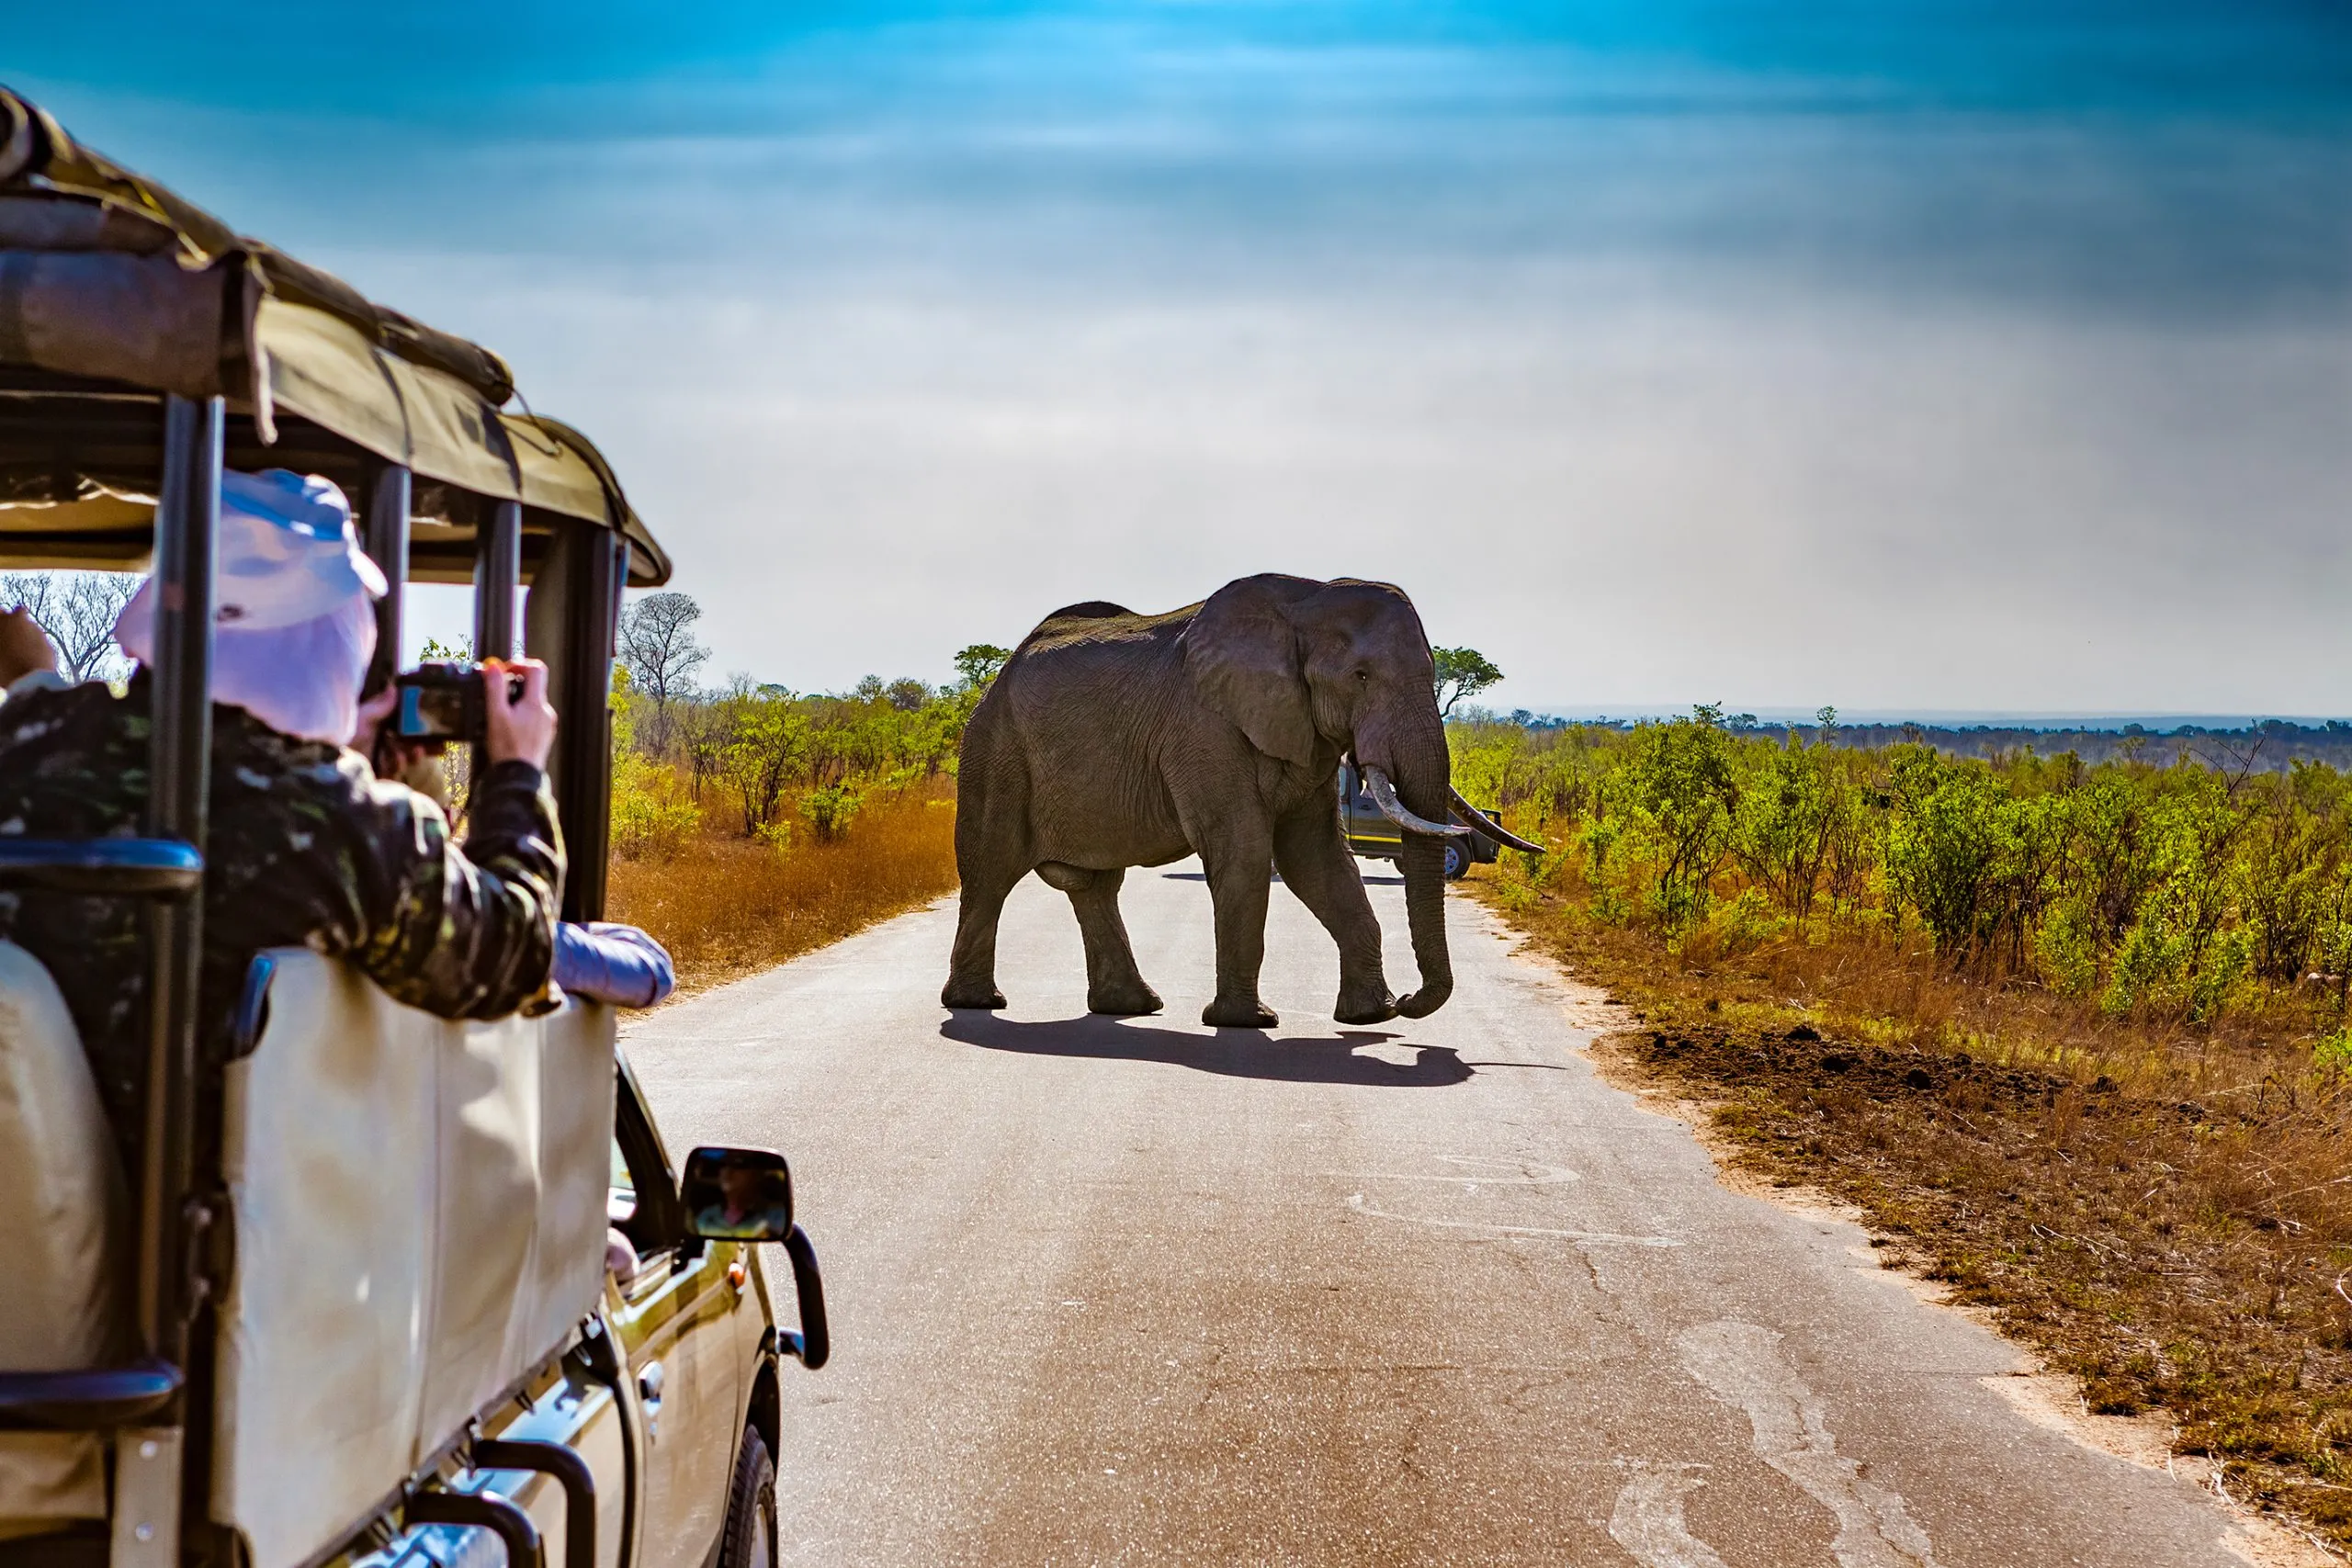 África do Sul. Safari no Parque Nacional Kruger - Elefantes africanos (Loxodonta africana)